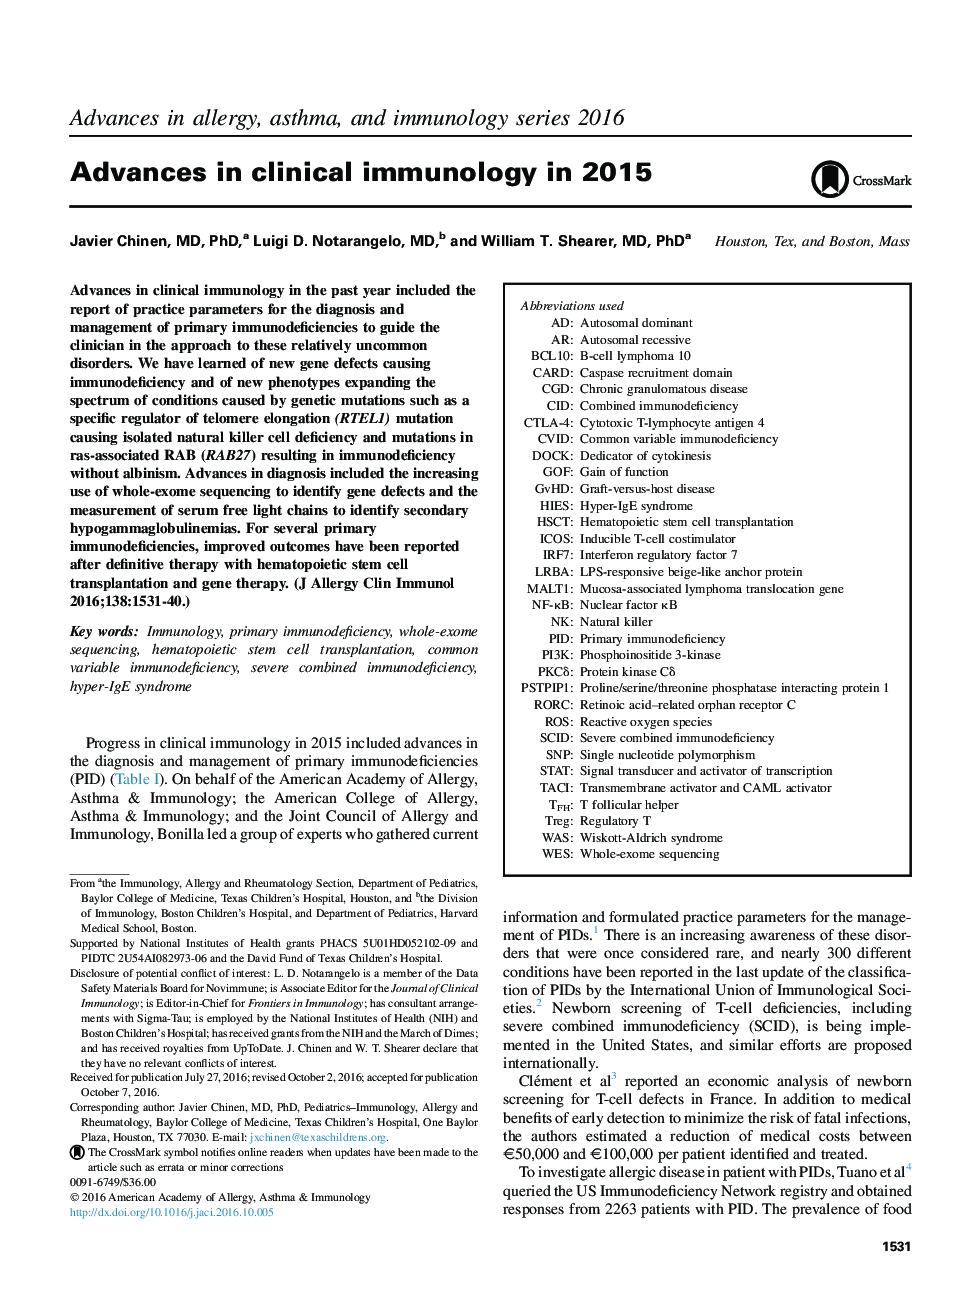 پیشرفت در ایمونولوژی بالینی در سال 2015 